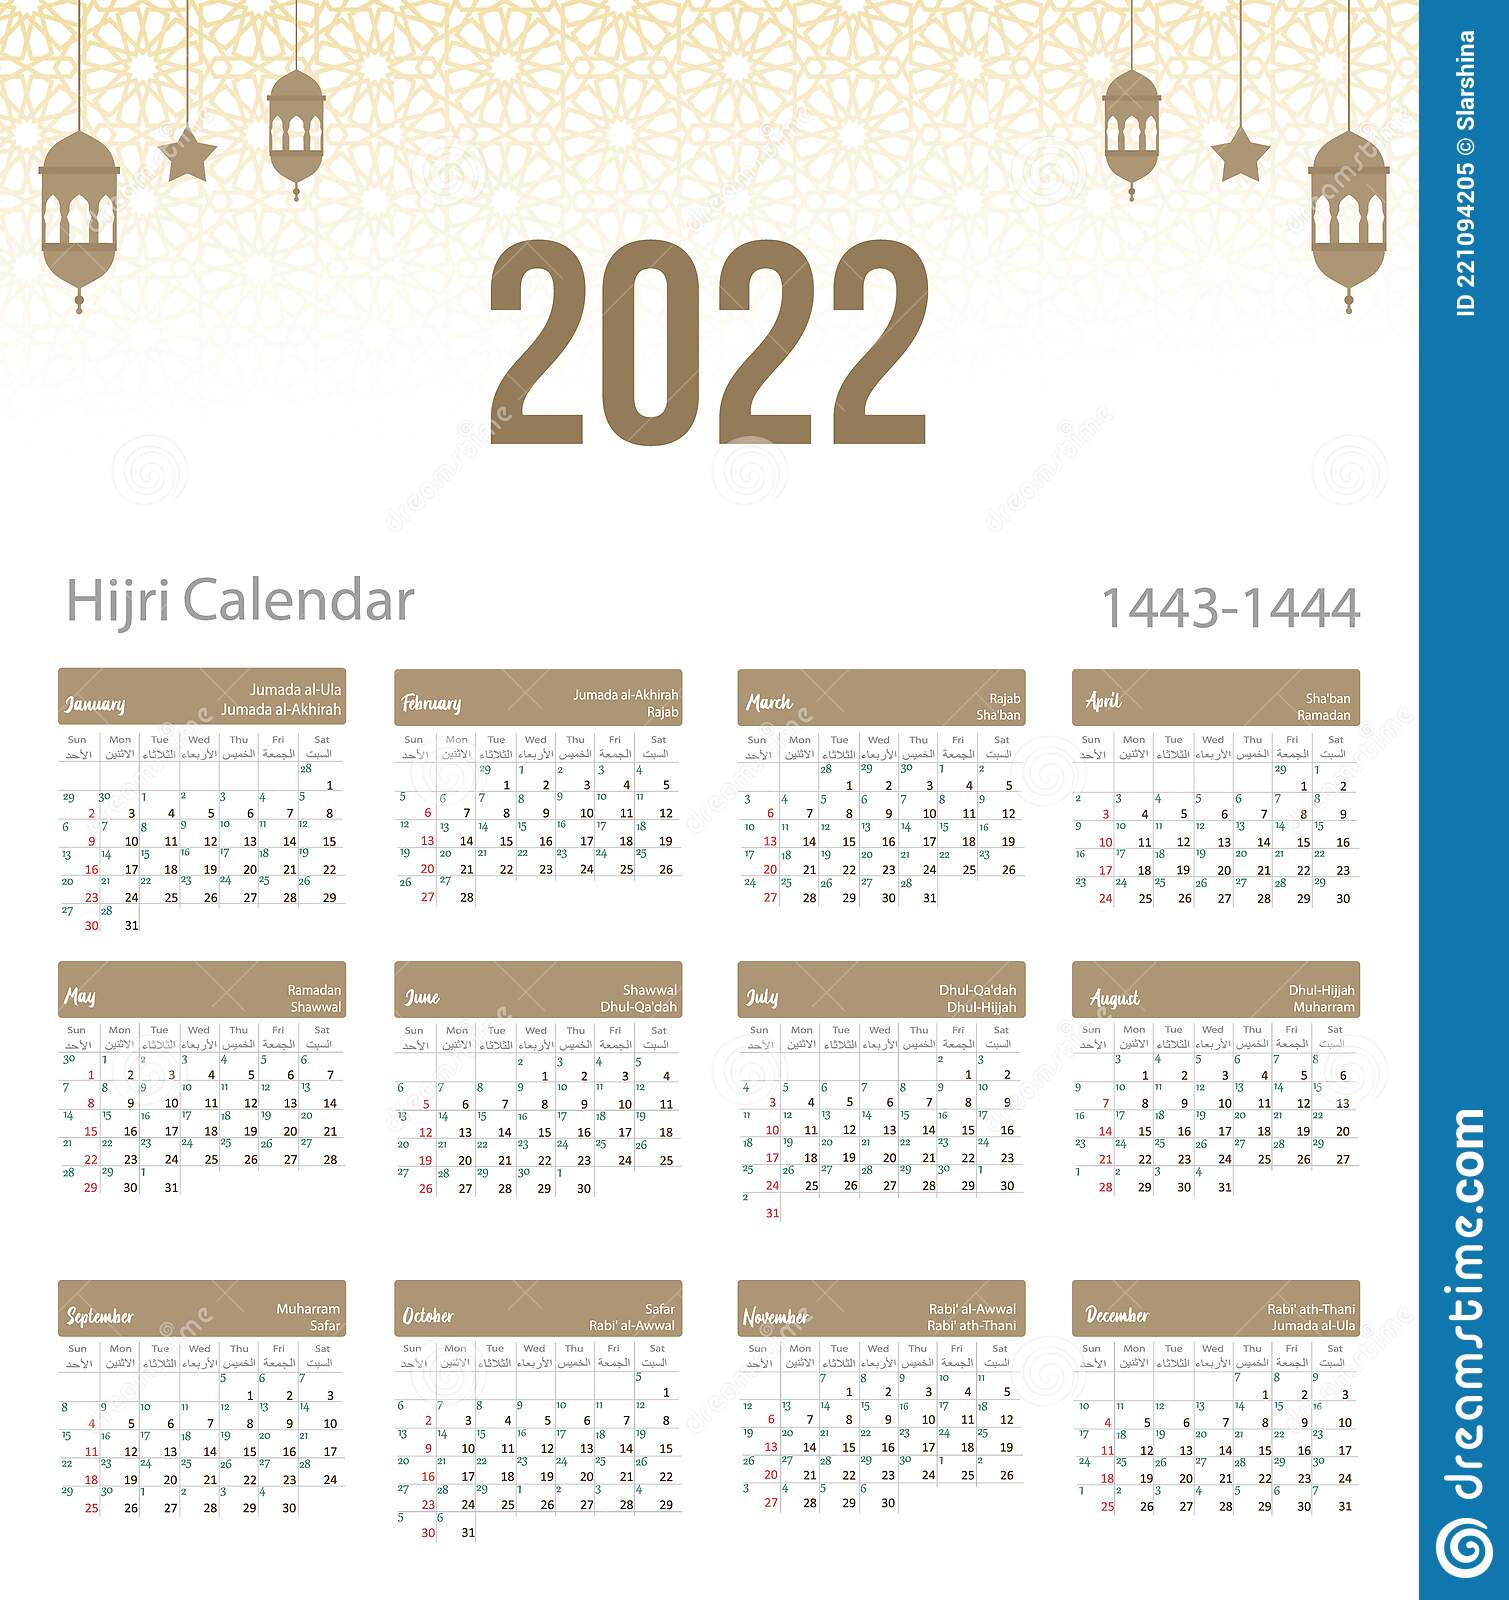 Hijri Calendar 2022 - June Calendar 2022